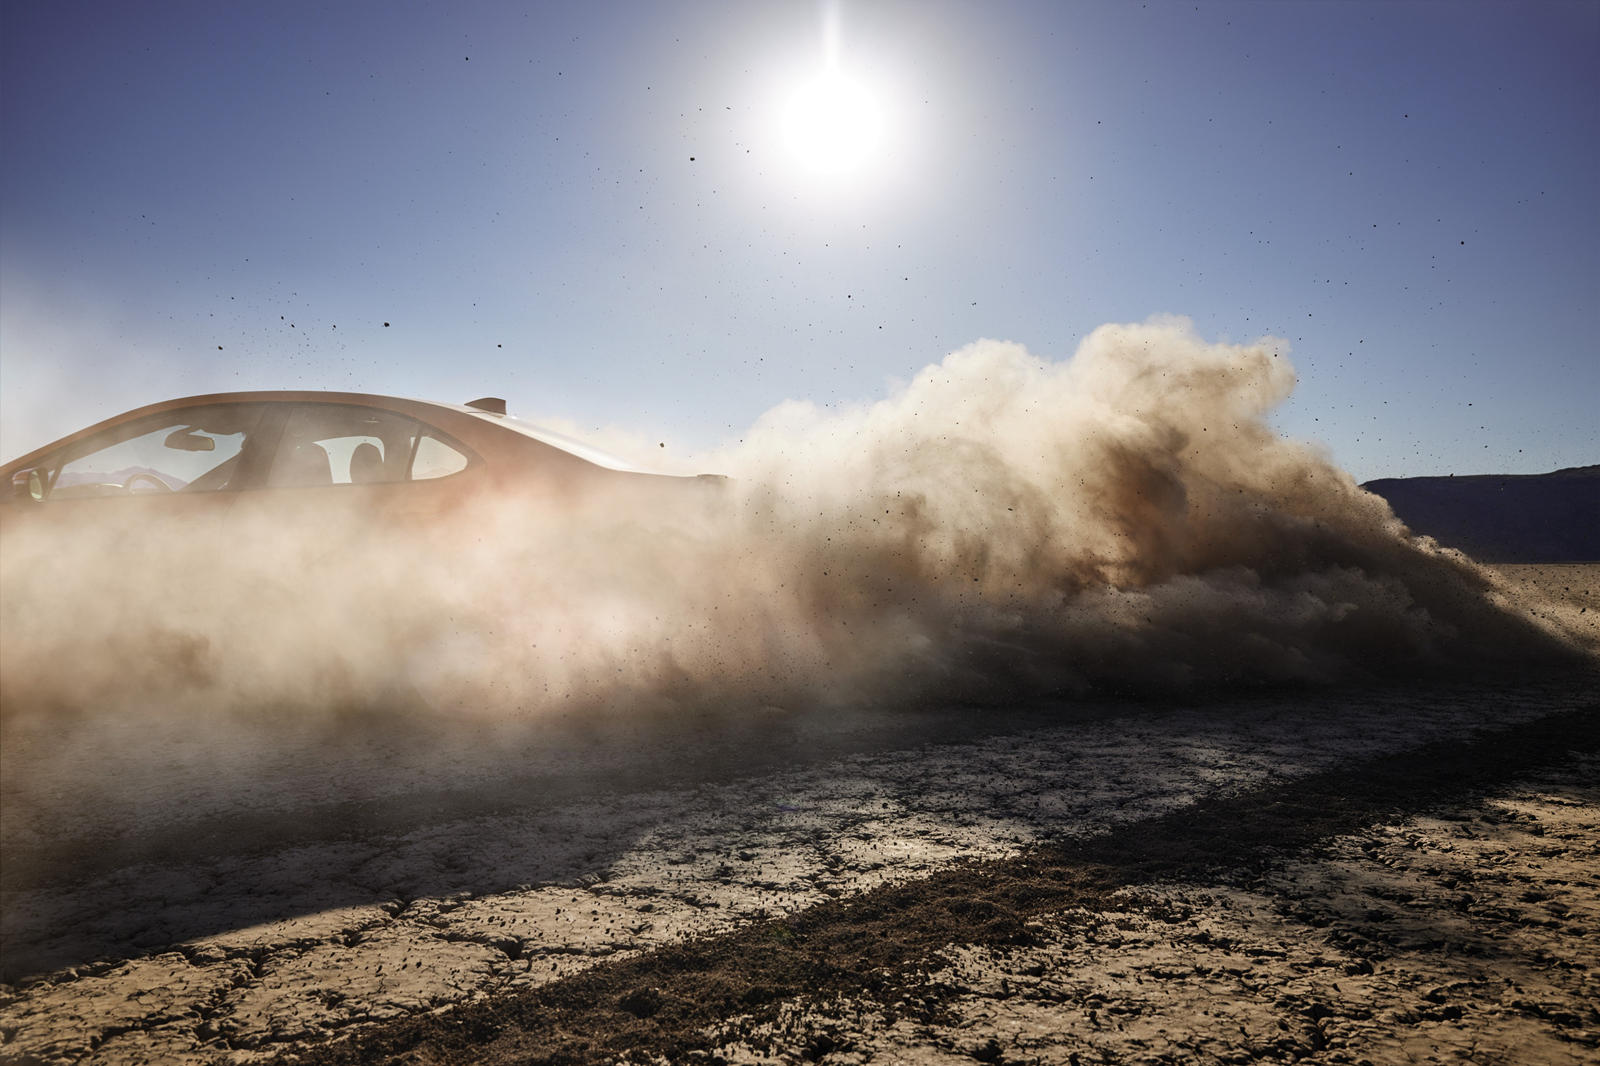 WRX расшифровывается как «World Rally eXperimental», поэтому автомобиль должен с непревзойденной легкостью преодолевать бездорожье. Никаких подробностей о трансмиссии не подтверждено, но, по слухам, WRX будет использовать 2,4-литровый четырехцилиндро